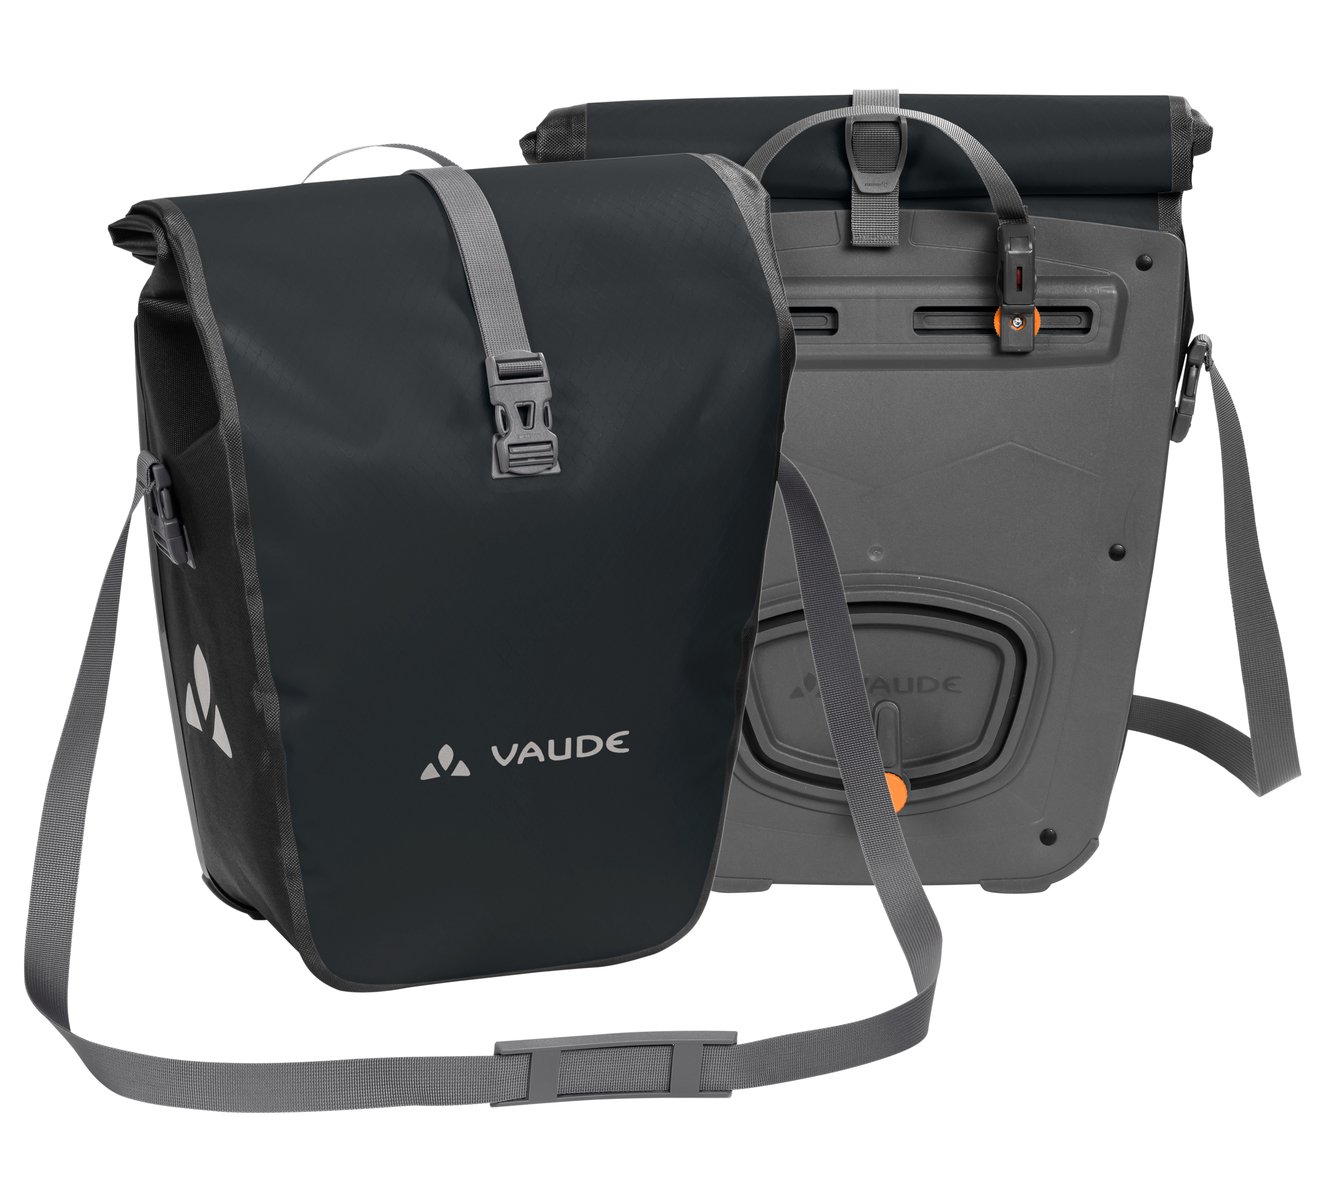 Сумка велосипедная VAUDE Aqua Back, комплект 2штуки, black 010, 12411 сумка велосипедная syncros pannier bag для багажника black es281115 0001